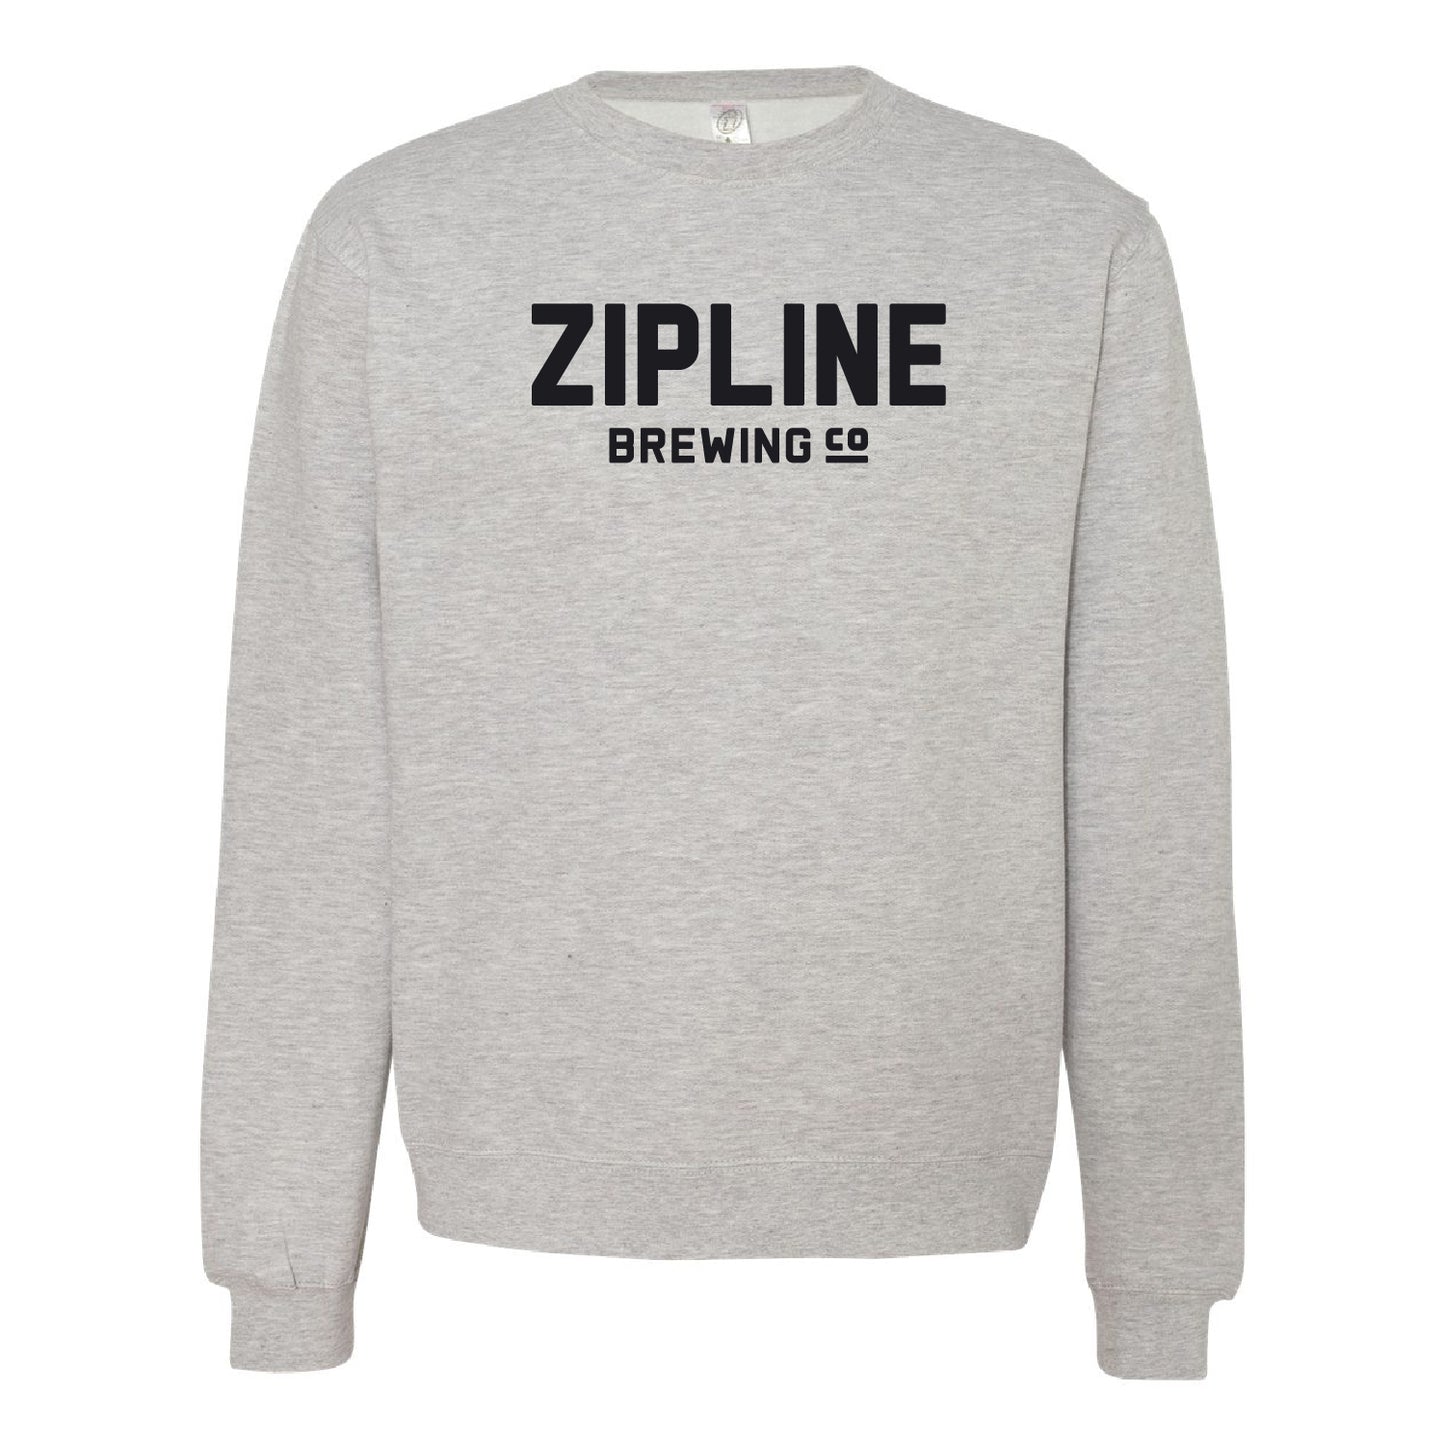 Zipline Brewing Co. Midweight Sweatshirt